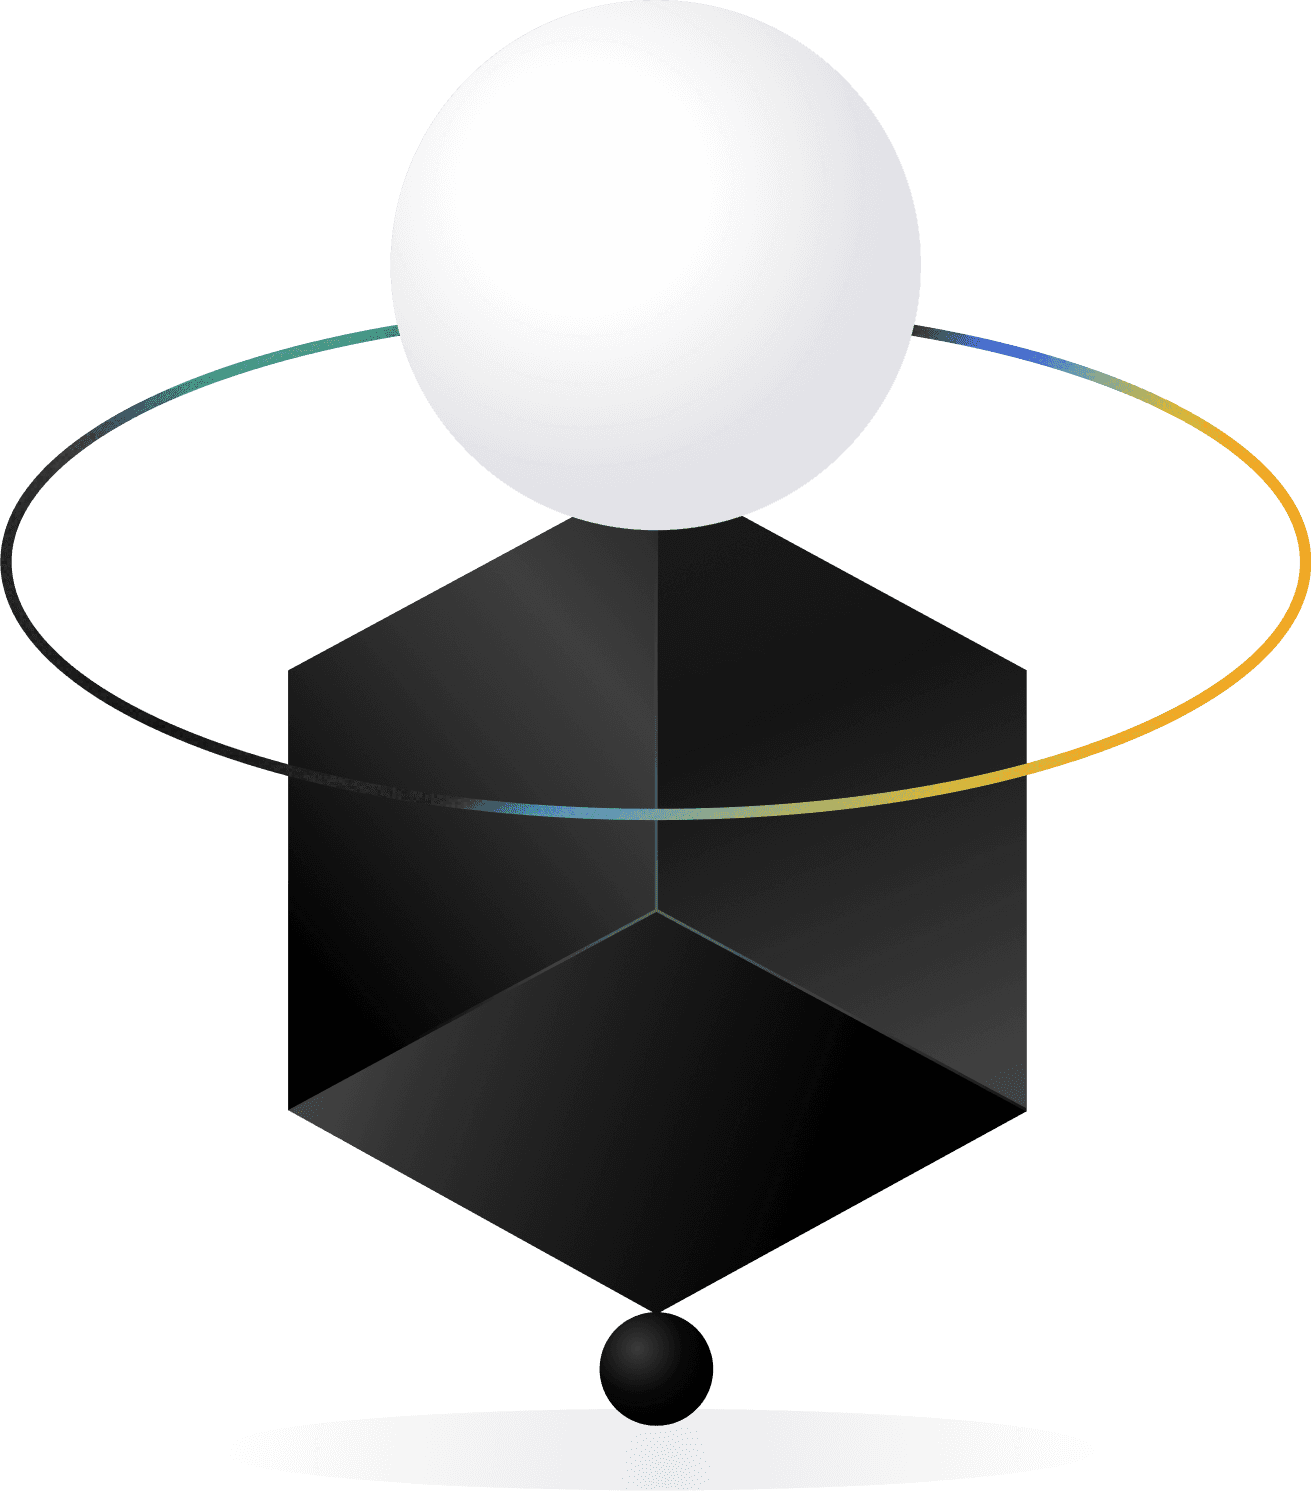 Abstrakt grafikk med mørk kube og lys kule for å bryte opp en UX-casestudie.